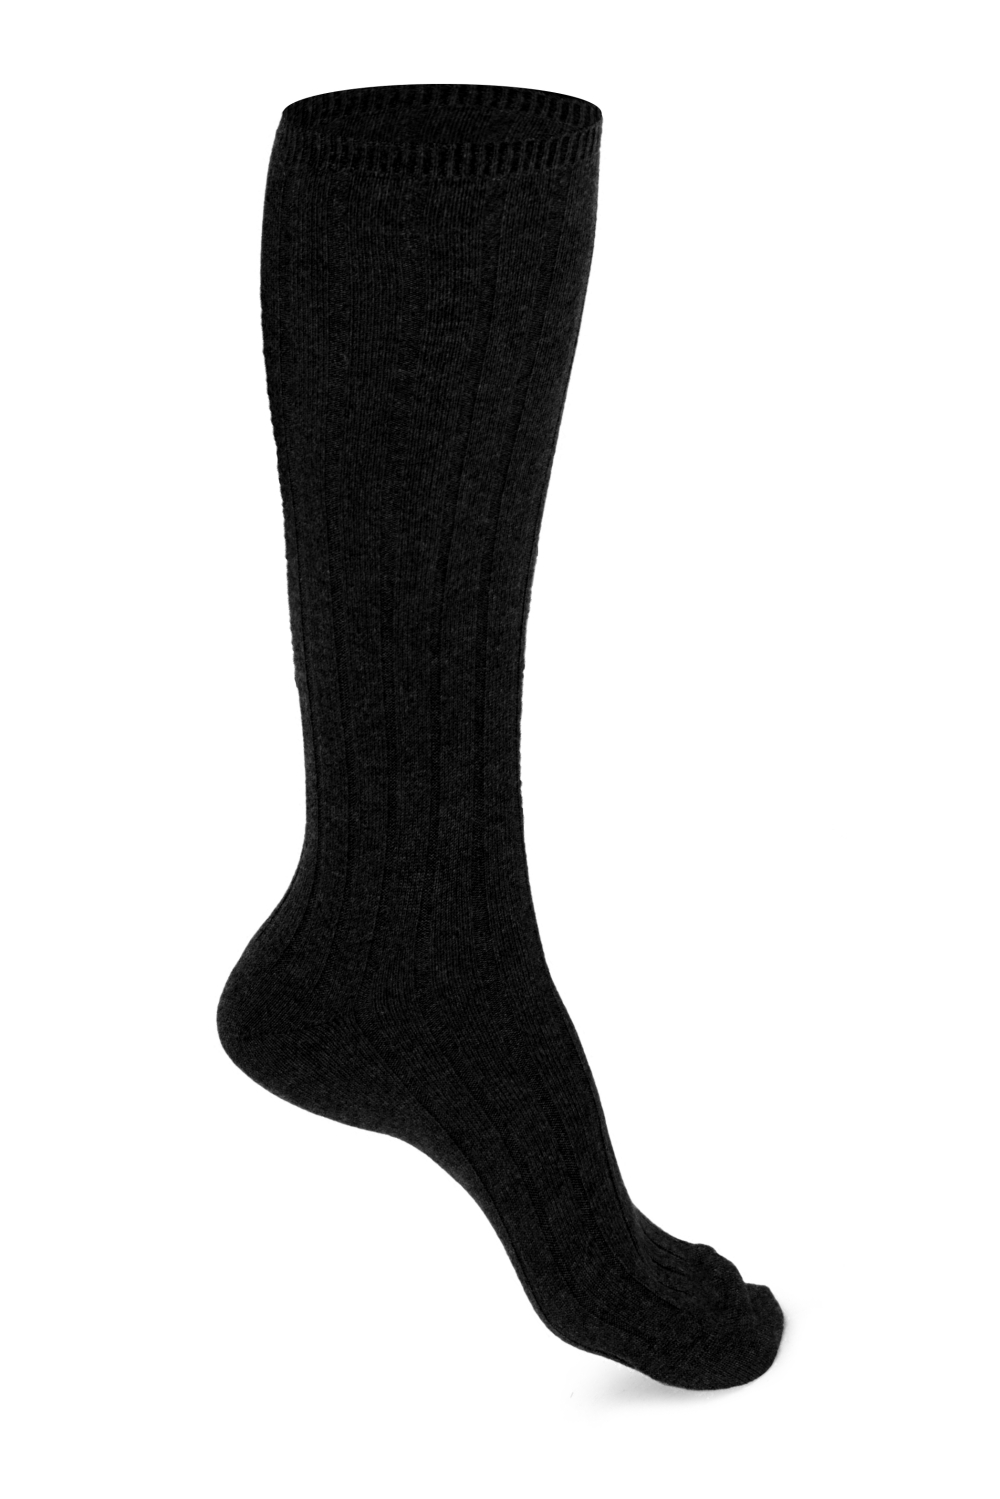 Kasjmier accessoires sokken dragibus long m zwart 35 38